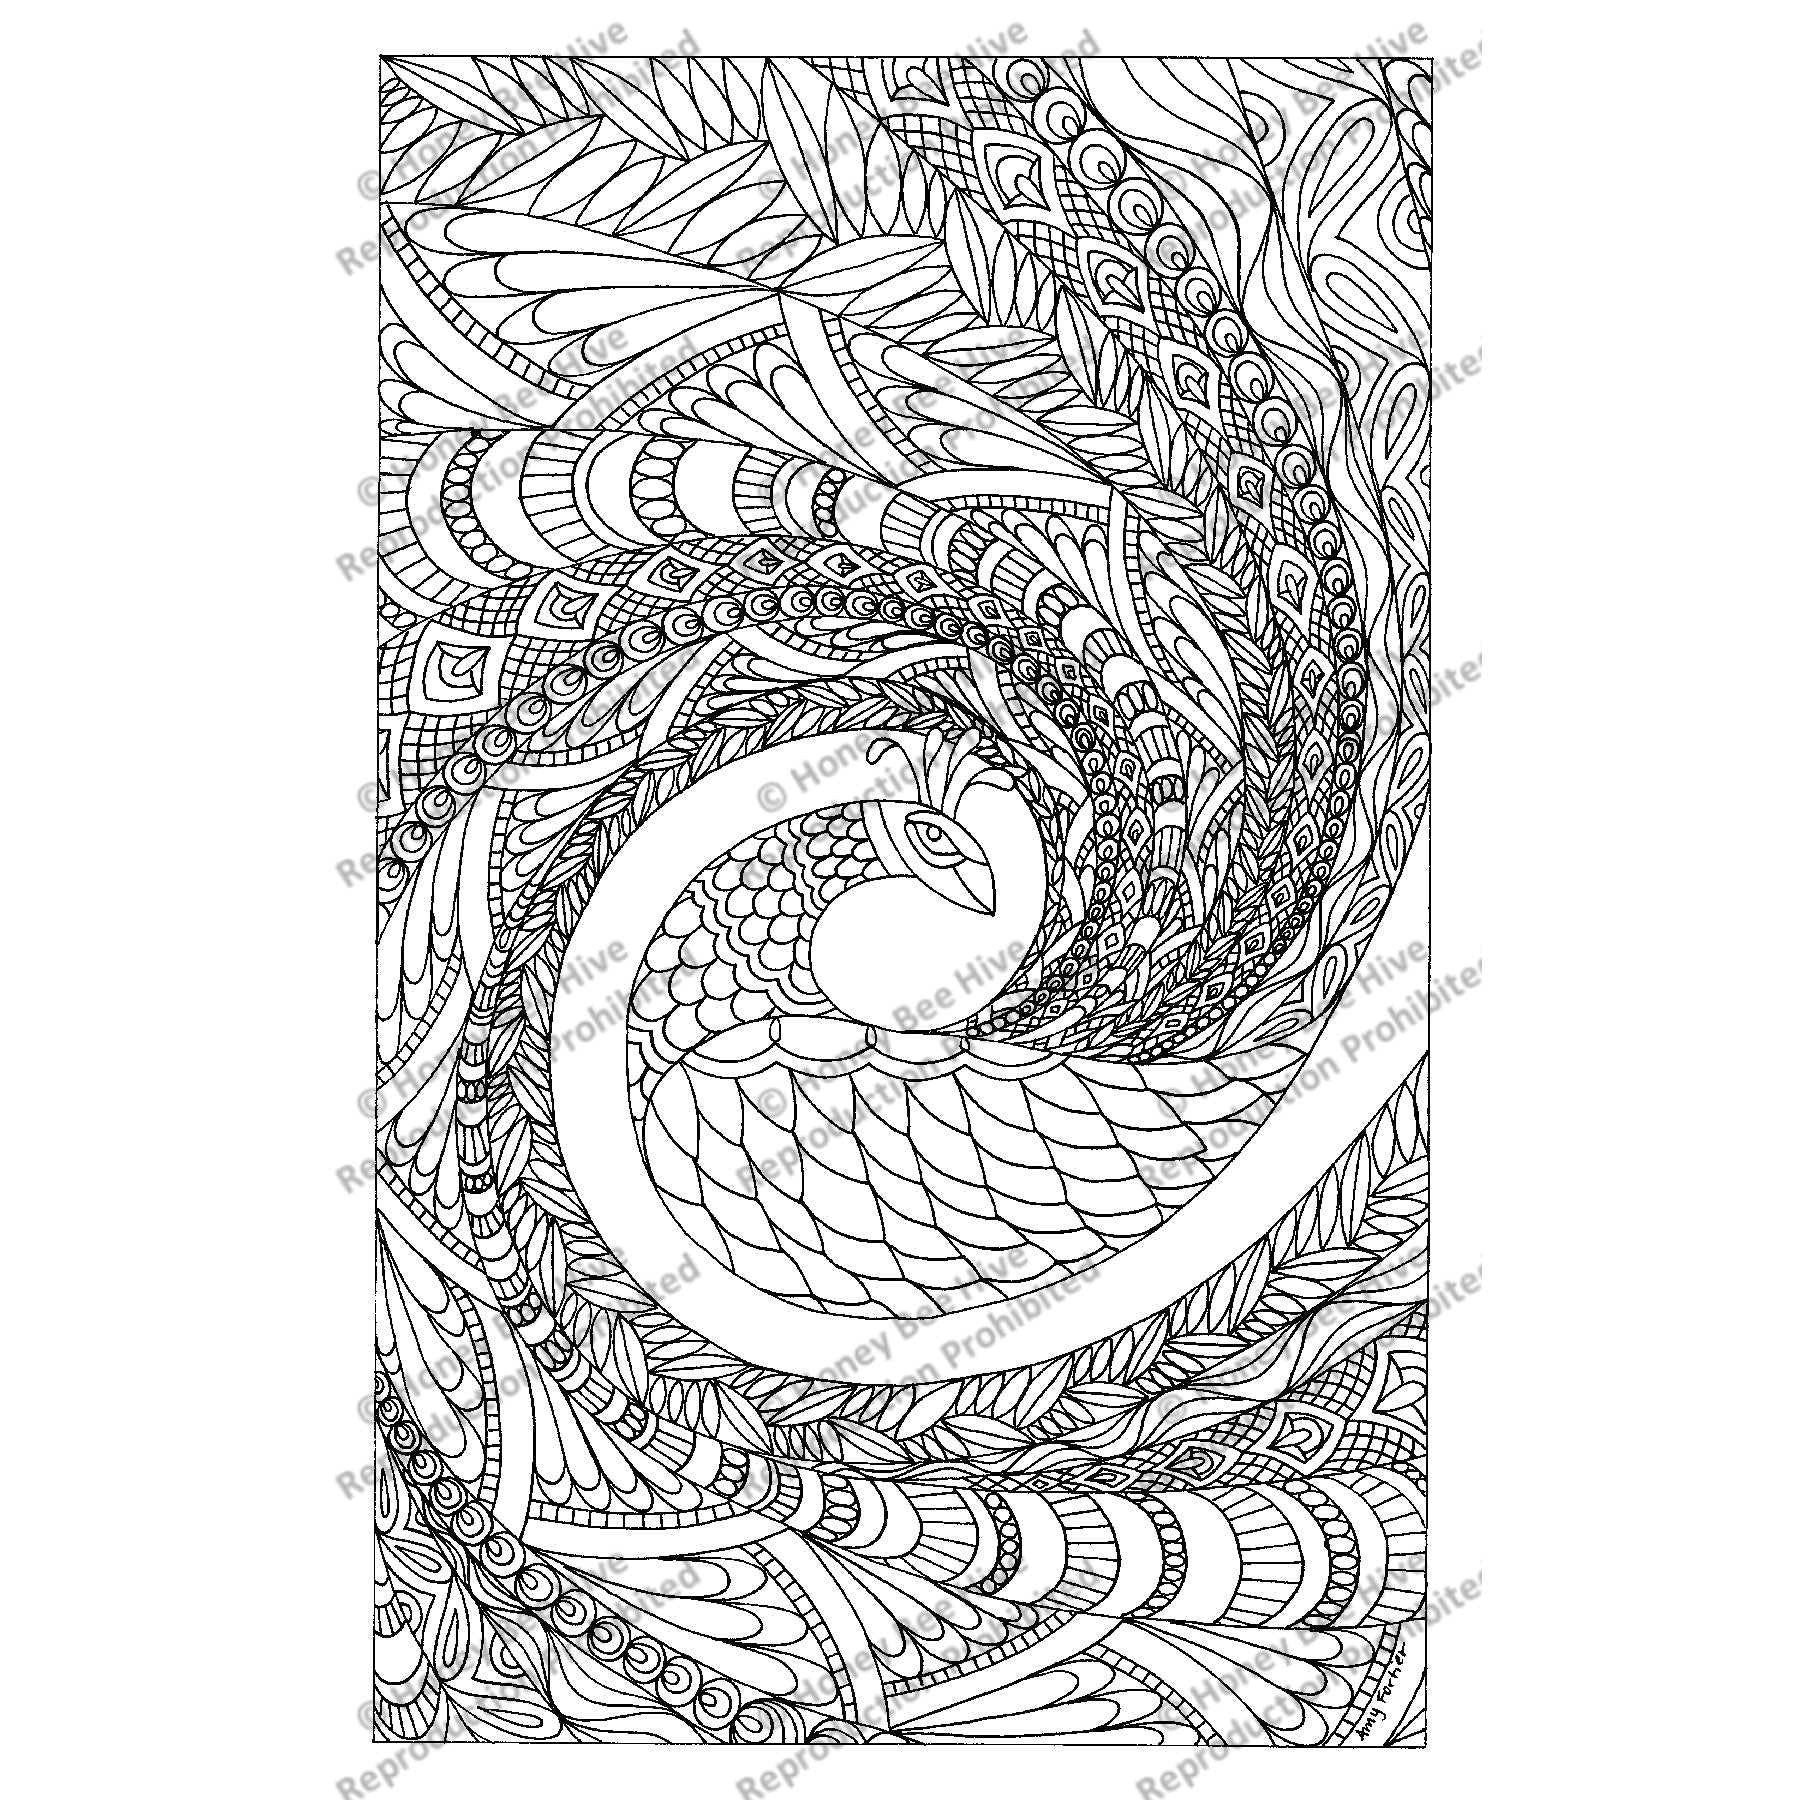 Peacock, rug hooking pattern